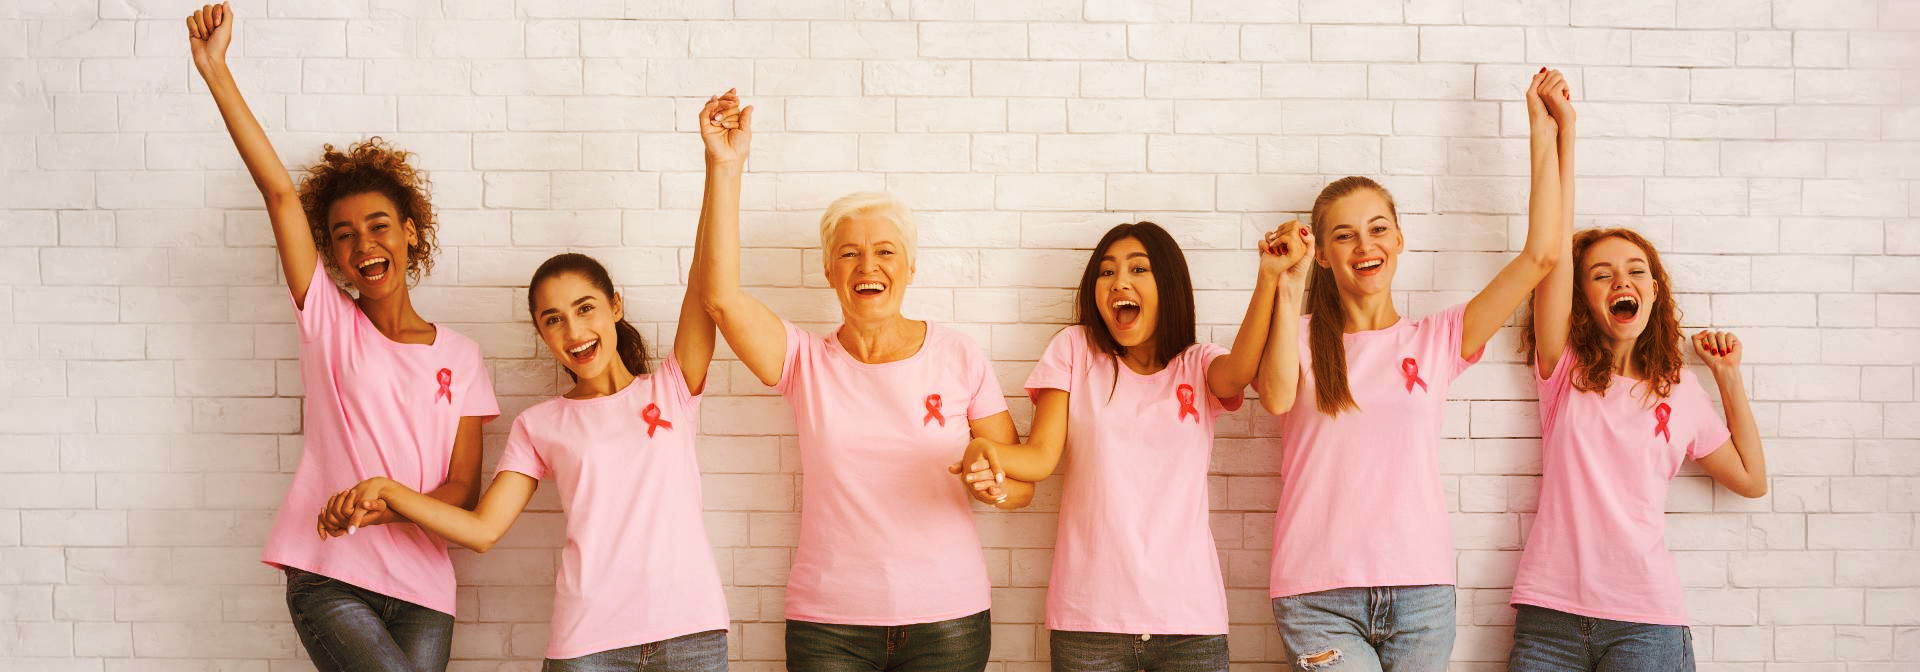 روشهای تشخیصی سرطان پستان ، شایعترین سرطان زنان توسط خود زنان